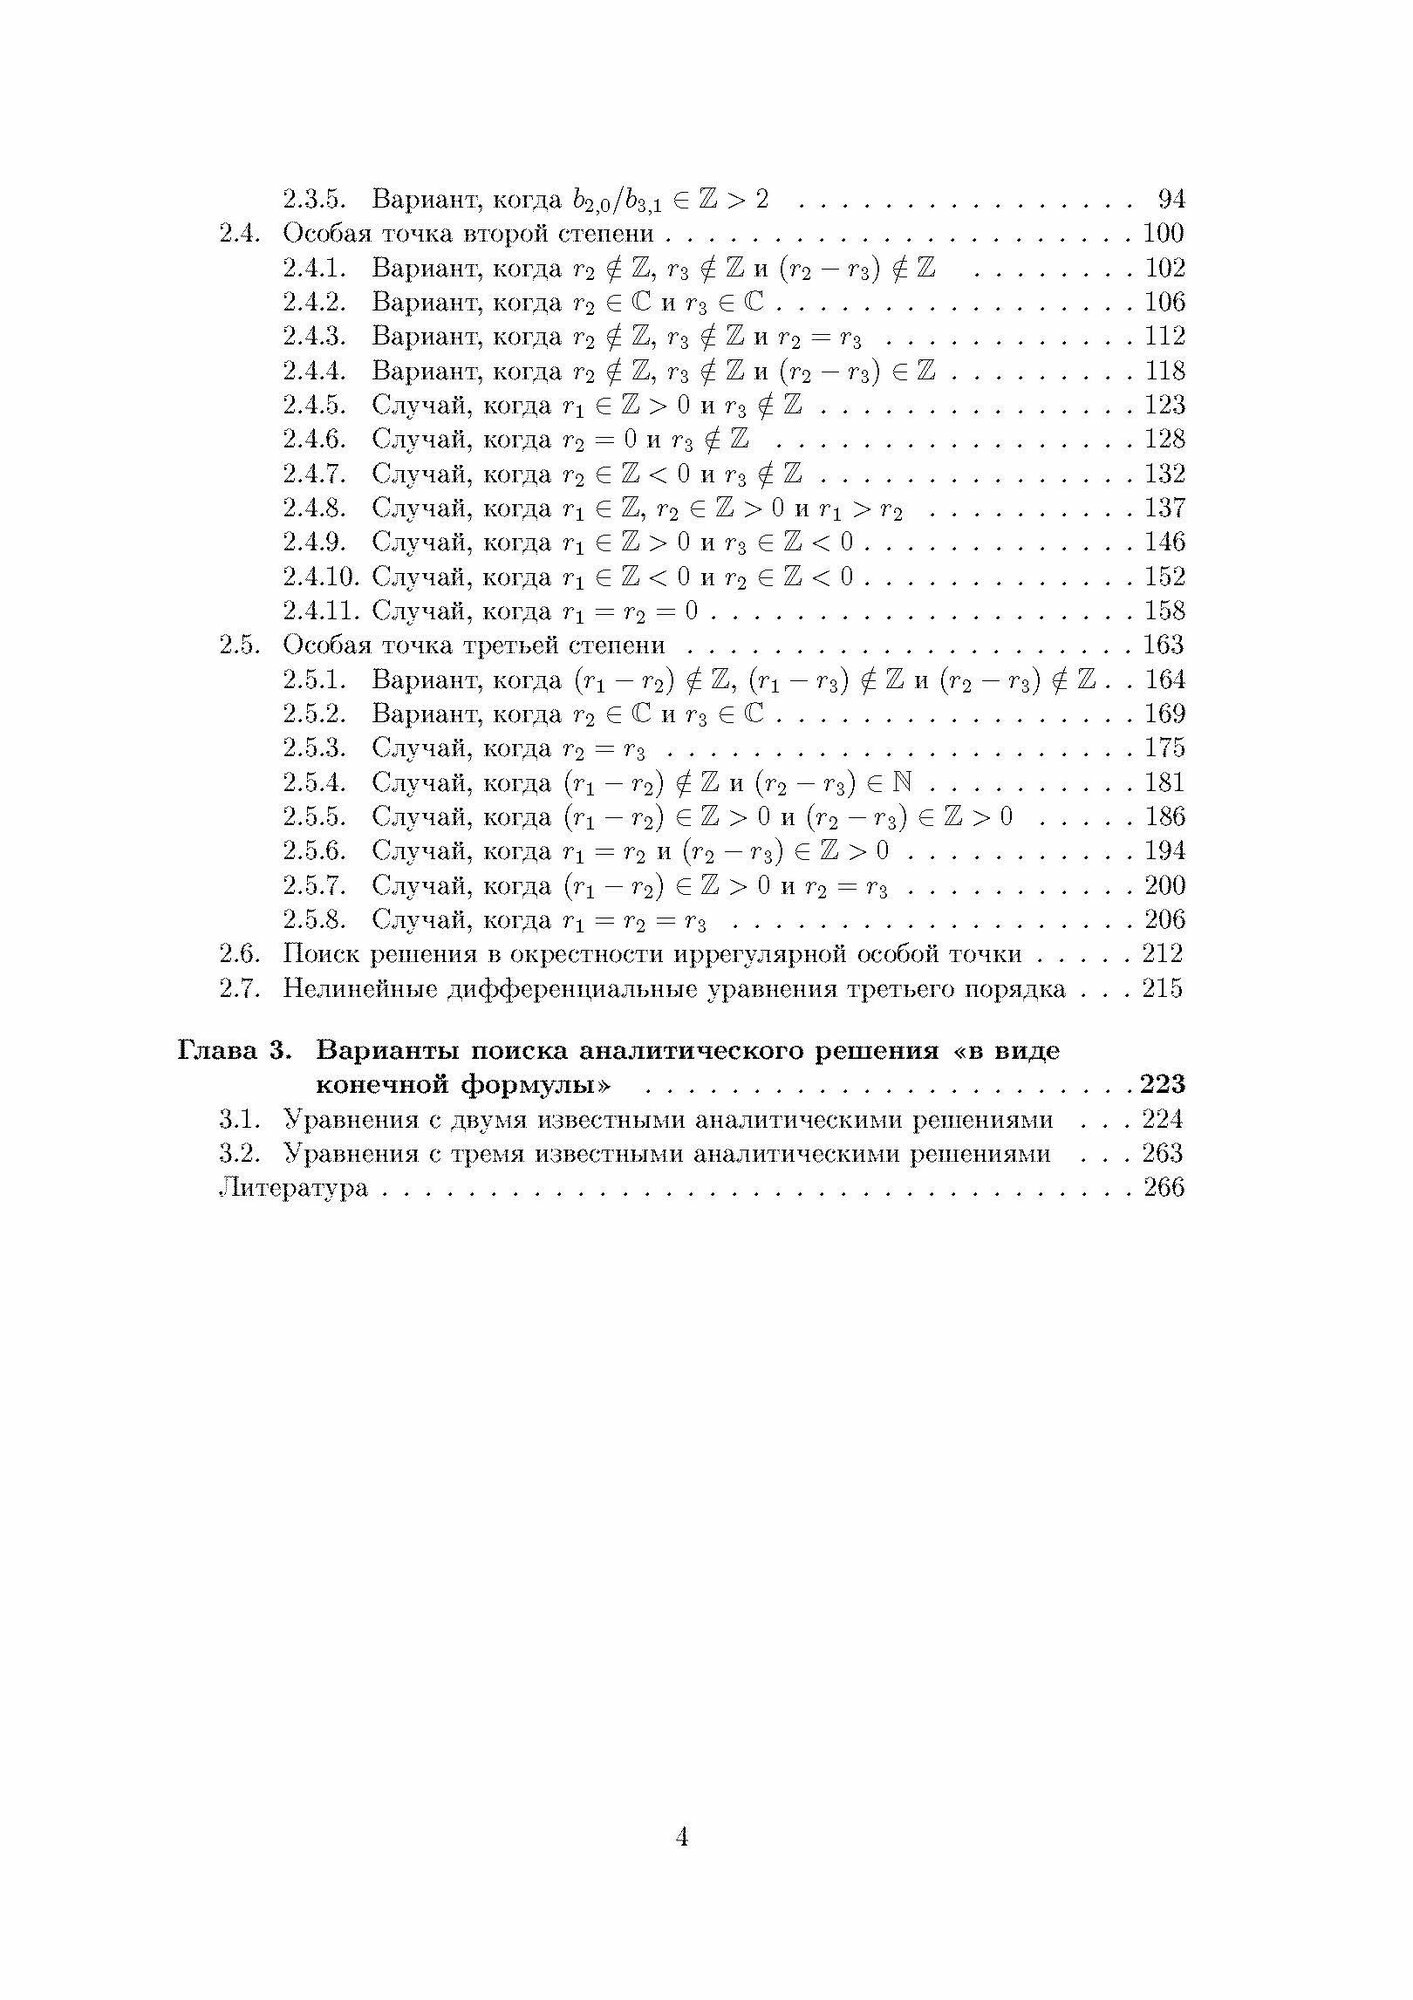 Дифференциальные уравнения третьего порядка - фото №6